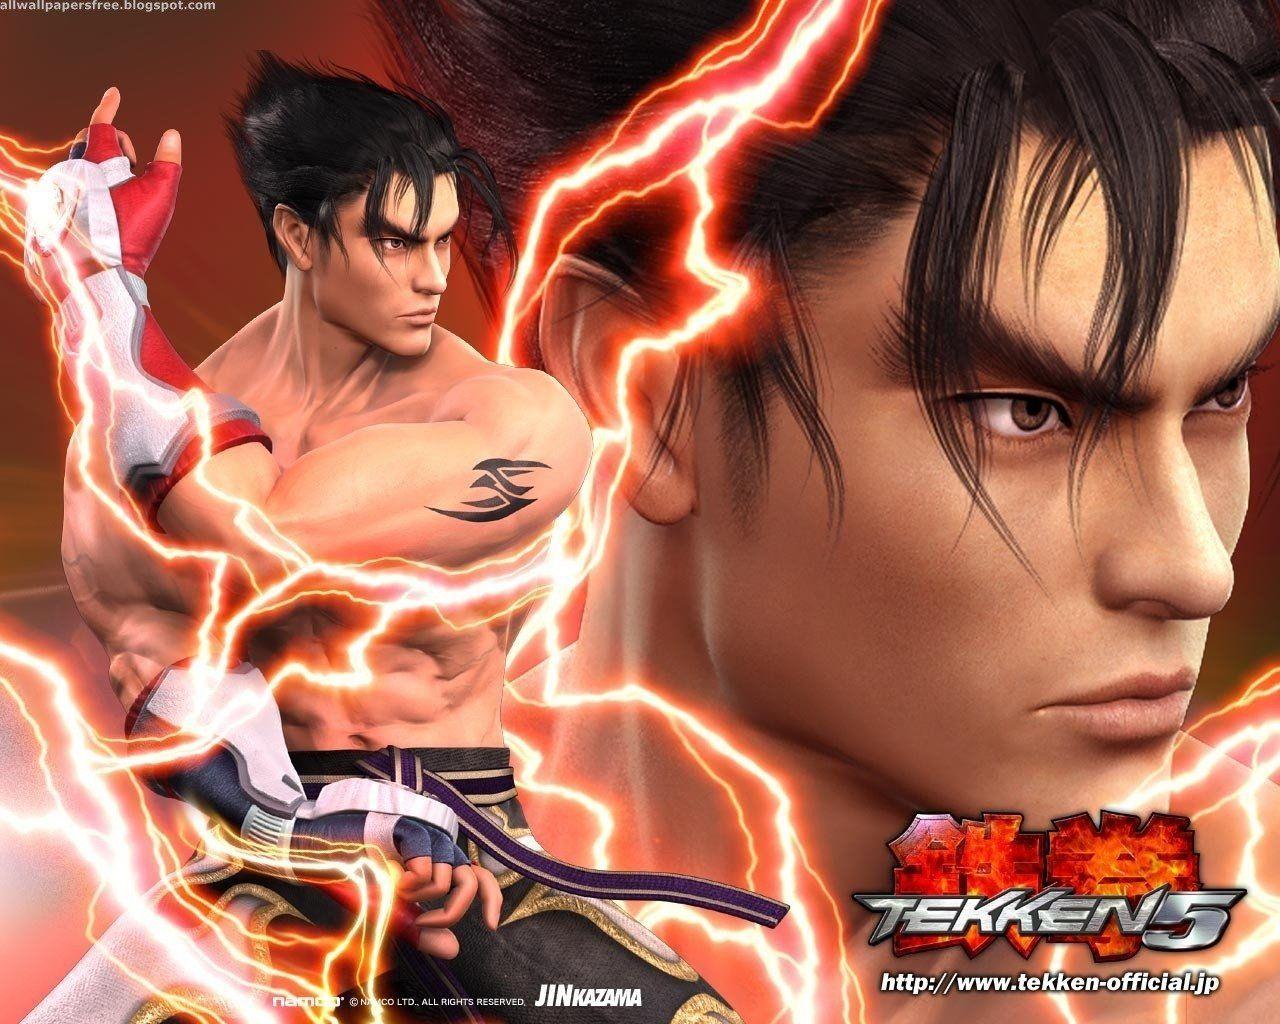 Tekken 7 Wallpapers in Ultra HD | 4K - Gameranx